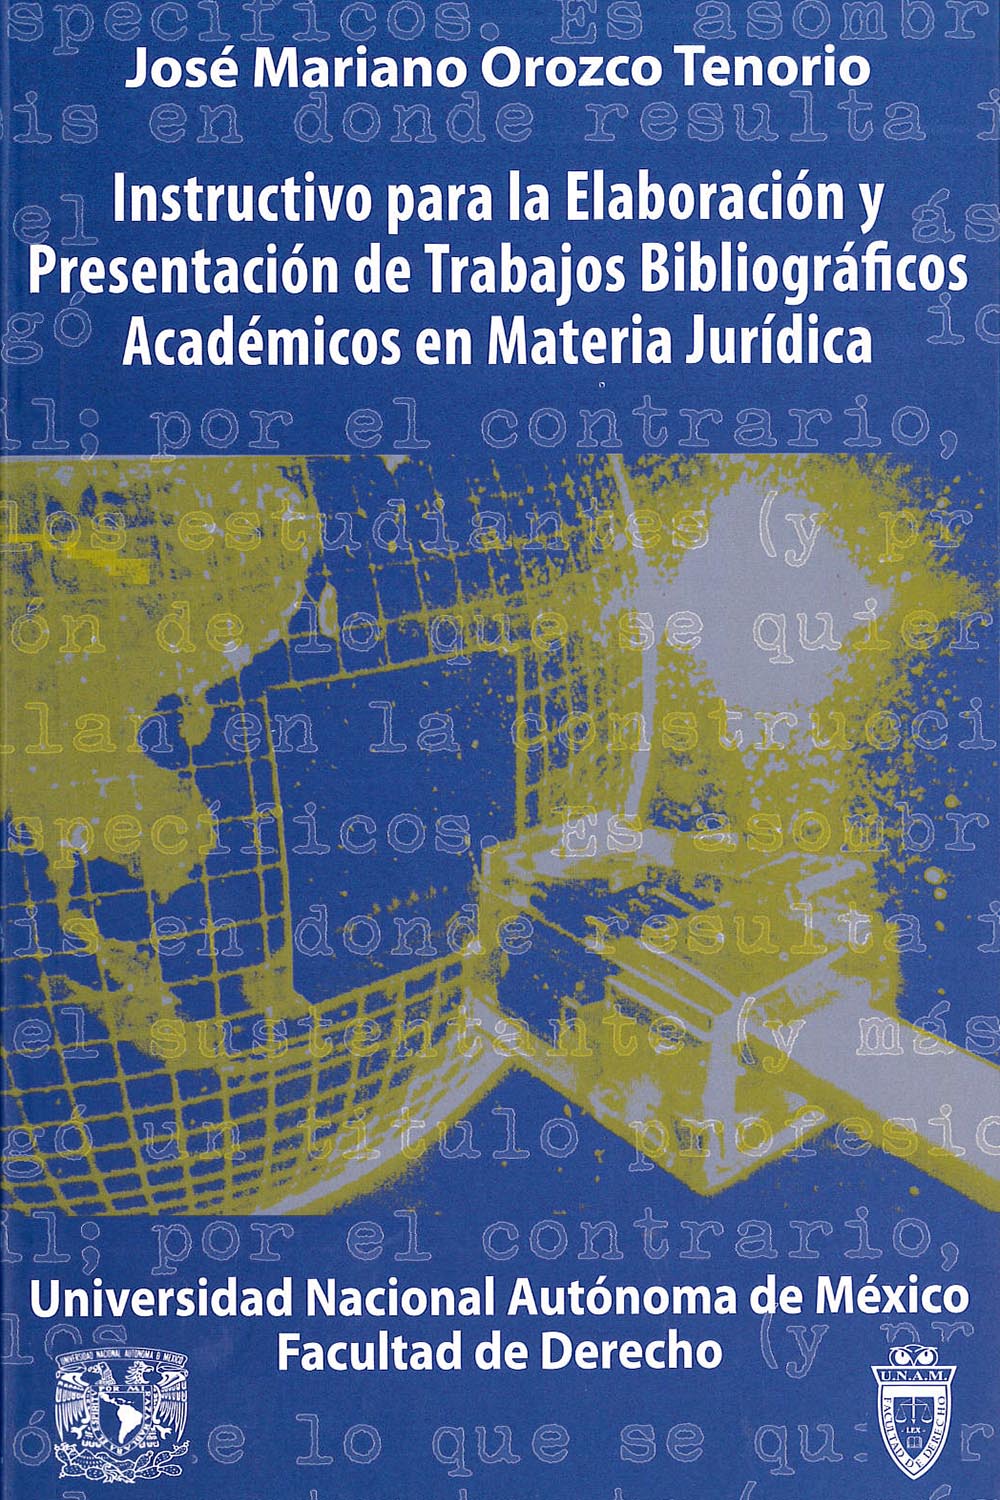 22 / 26 - KGF 150 O-76 Instructivo para la Elaboración y Presentación de Trabajos Bibliográficos Académicos en Materia Jurídica, José Mariano Orozco Tenorio - UNAM, México 2011